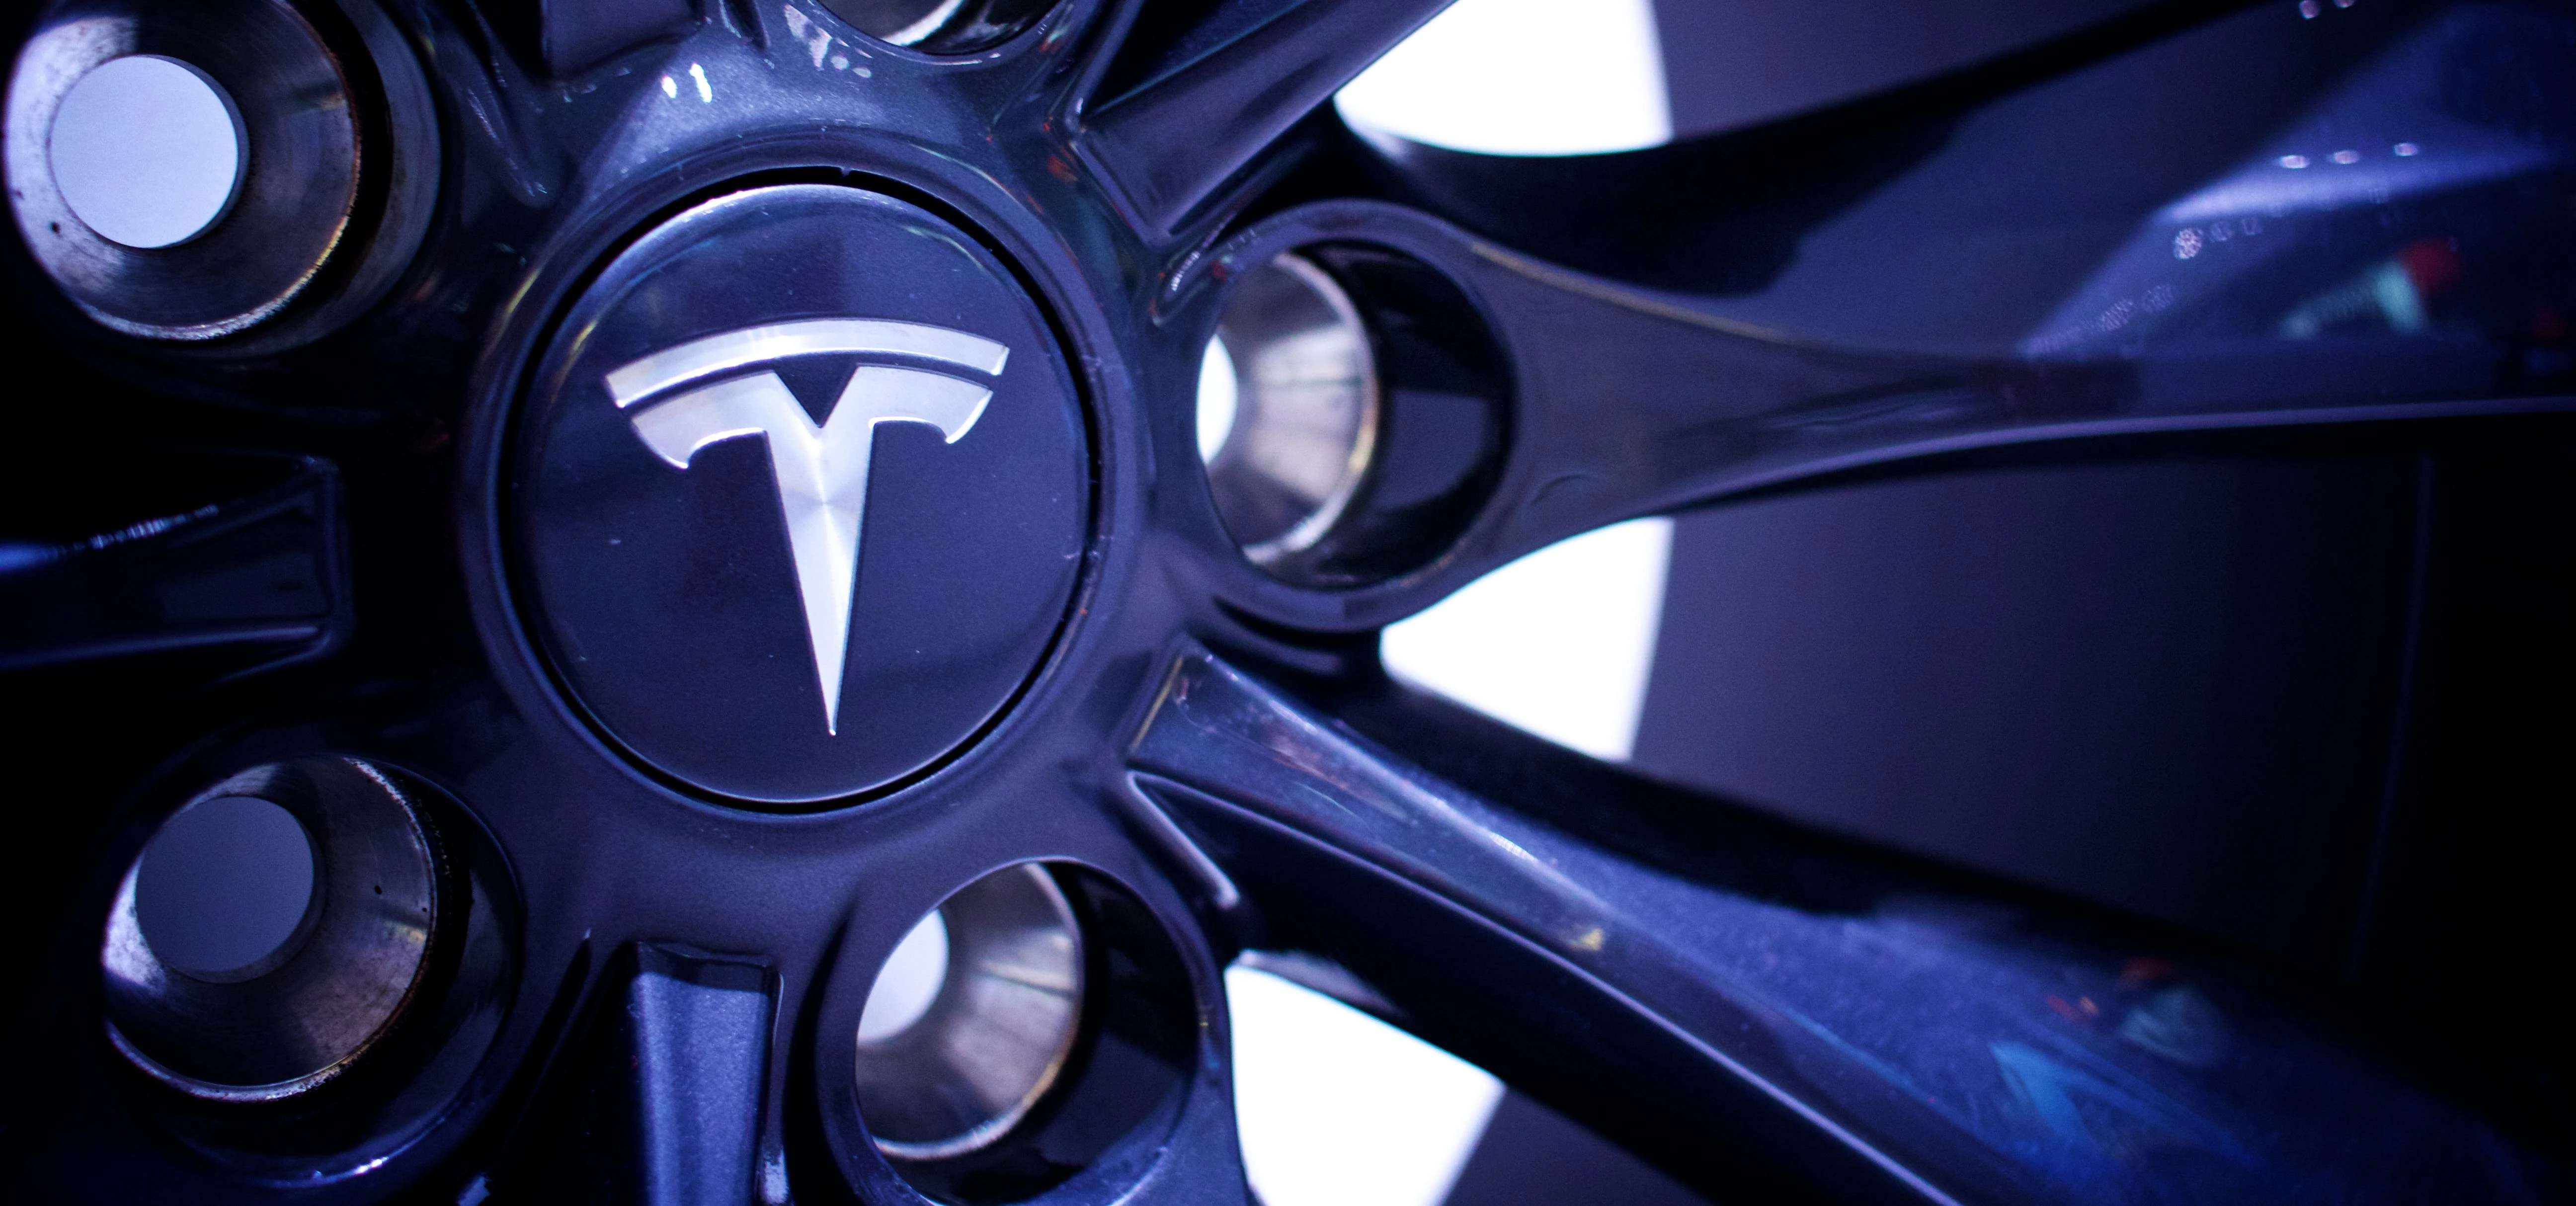 Tesla alloy wheels